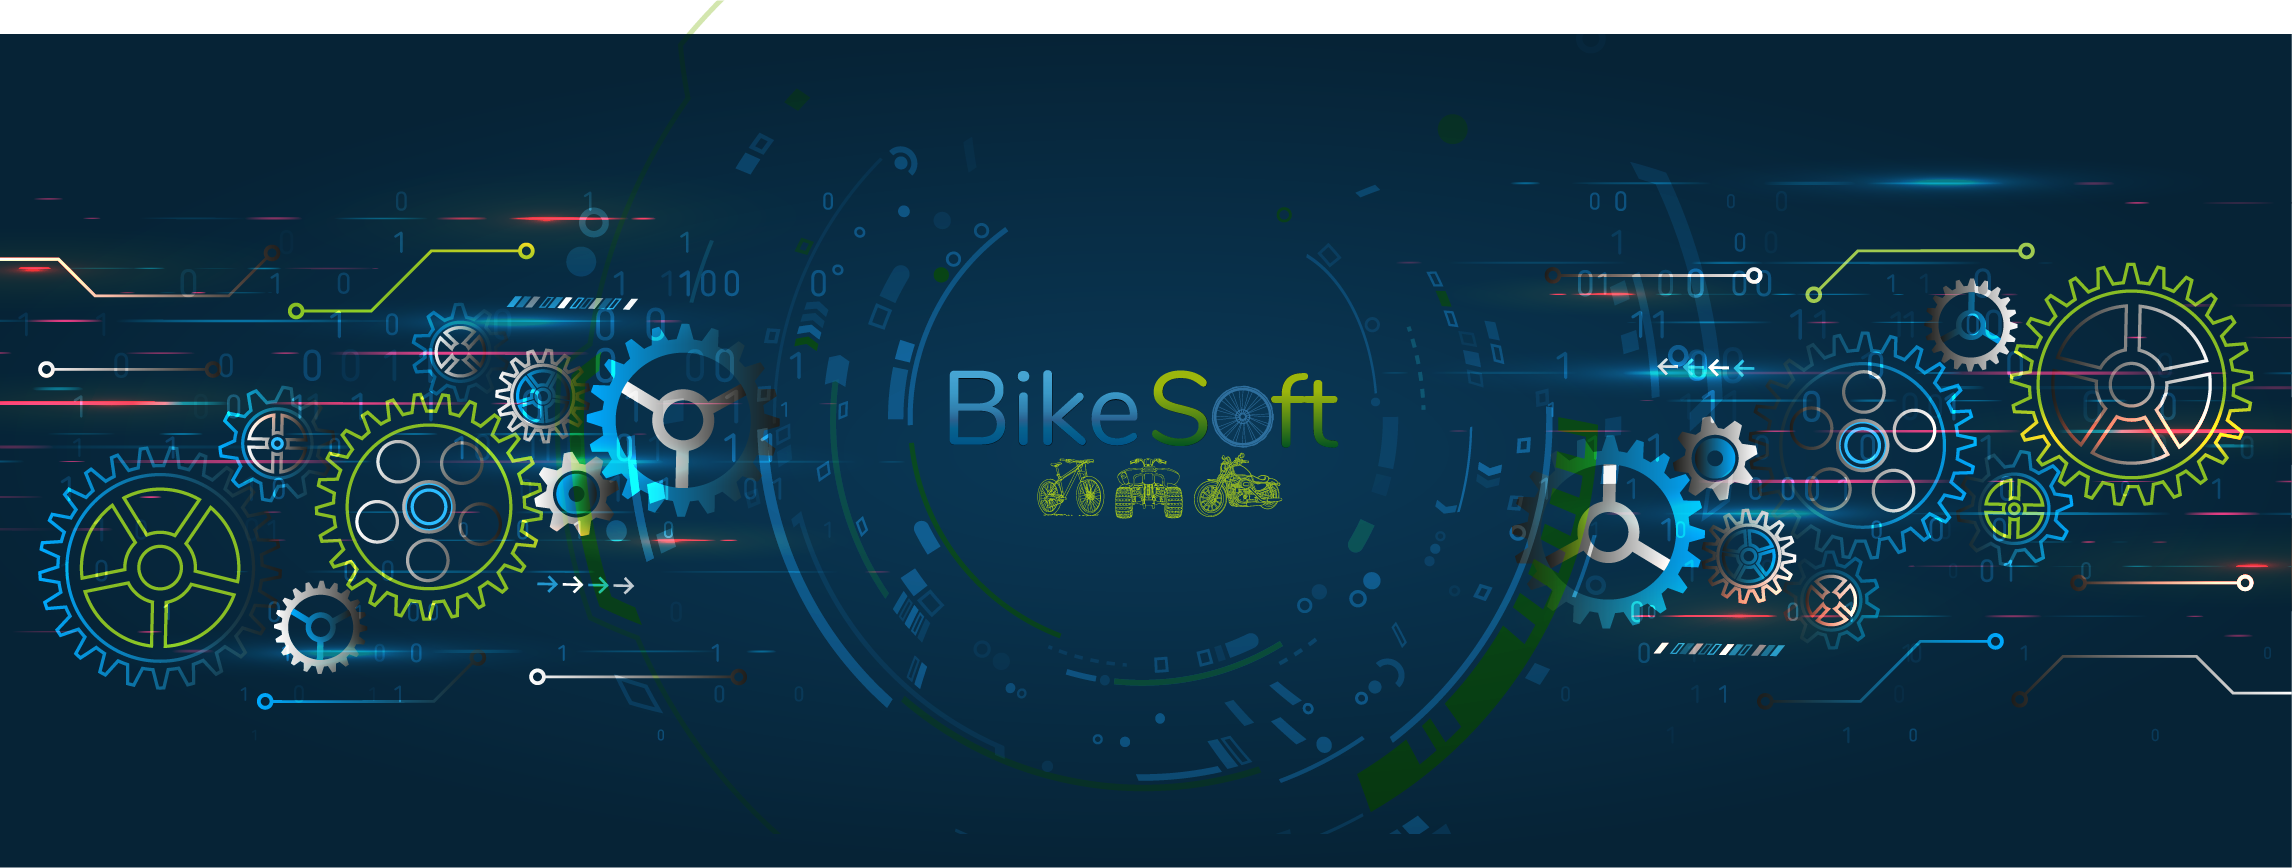 Vous êtes concessionnaire et vous cherchez un logiciel de gestion de moto ? BikeSoft est la solution idéale pour gérer votre activité !